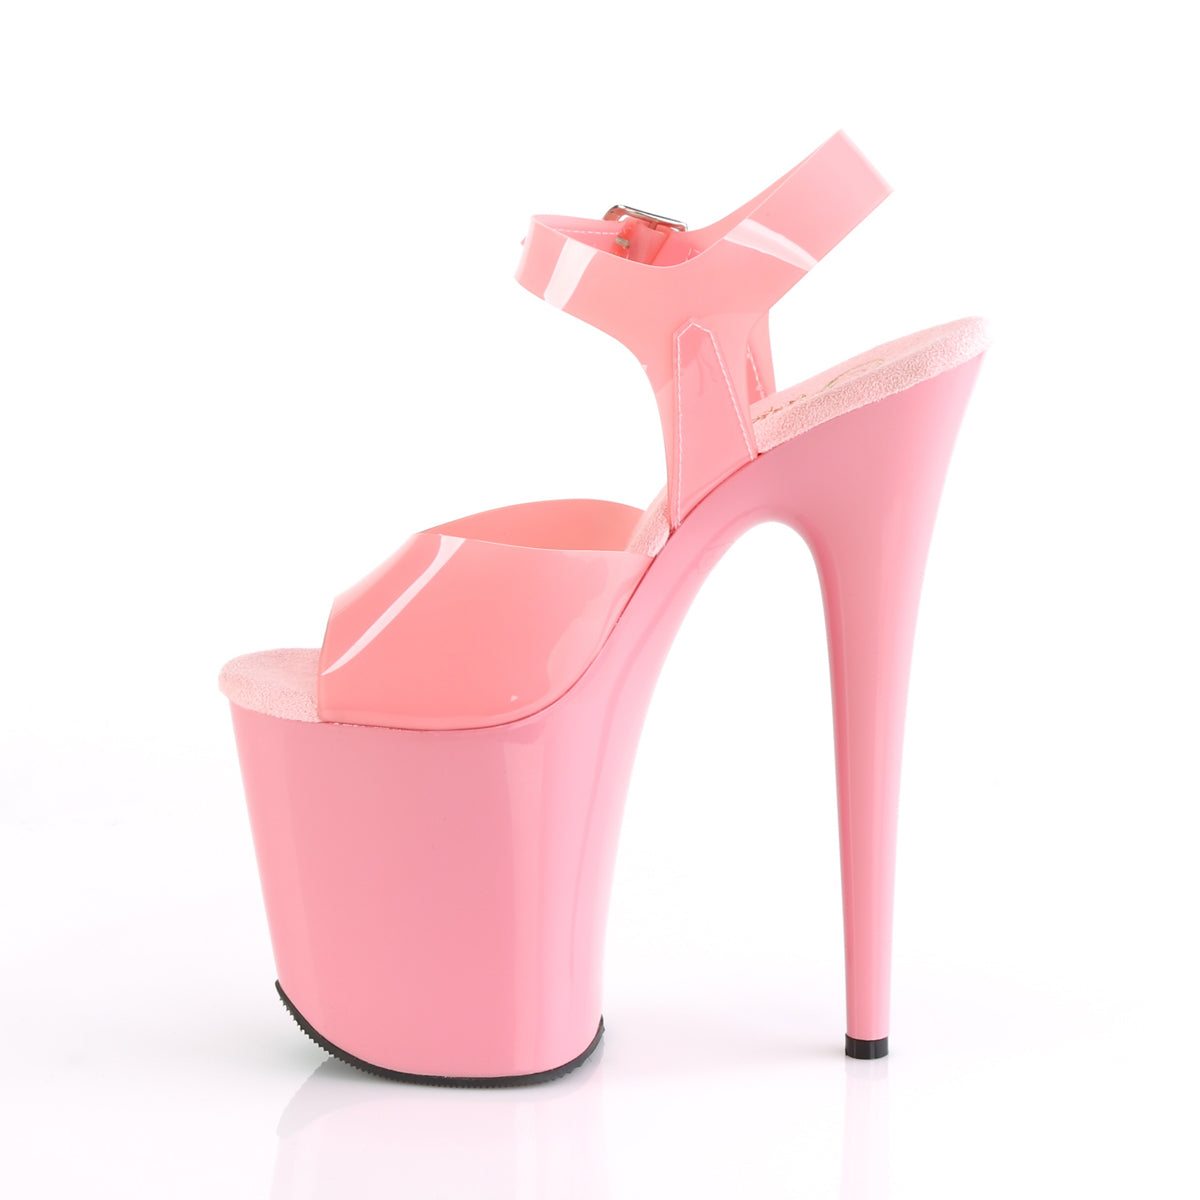 FLAMINGO-808N 8" Heel Baby Pink Pole Dancing Platforms-Pleaser- Sexy Shoes Pole Dance Heels